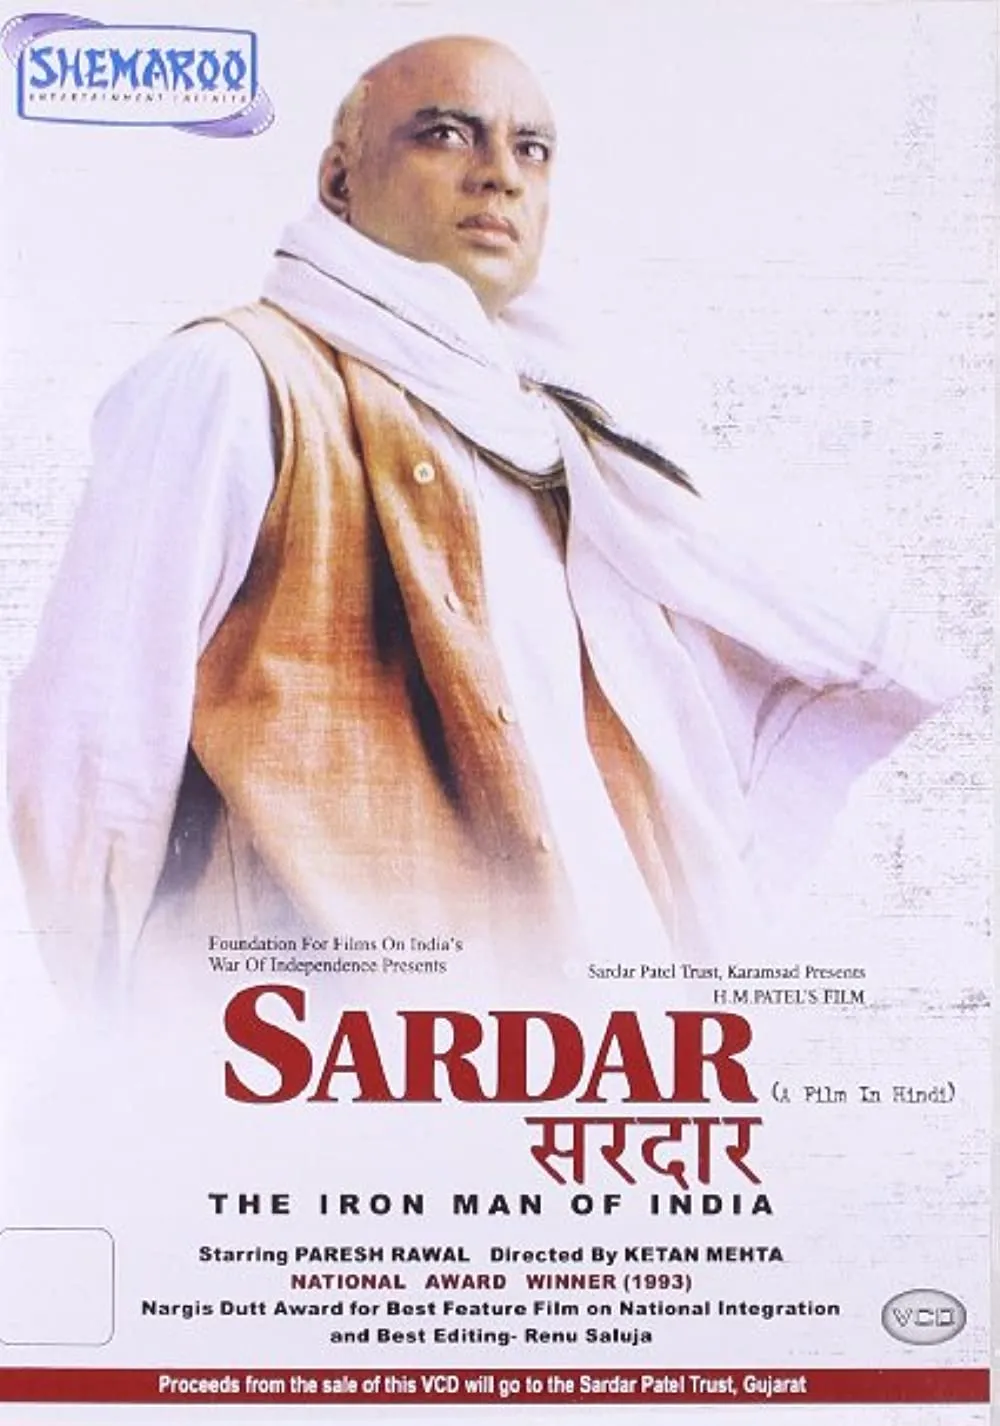 Paresh was recognized was when he played Sardar Vallabbhai Patel in Ketan Mehta's Sardar